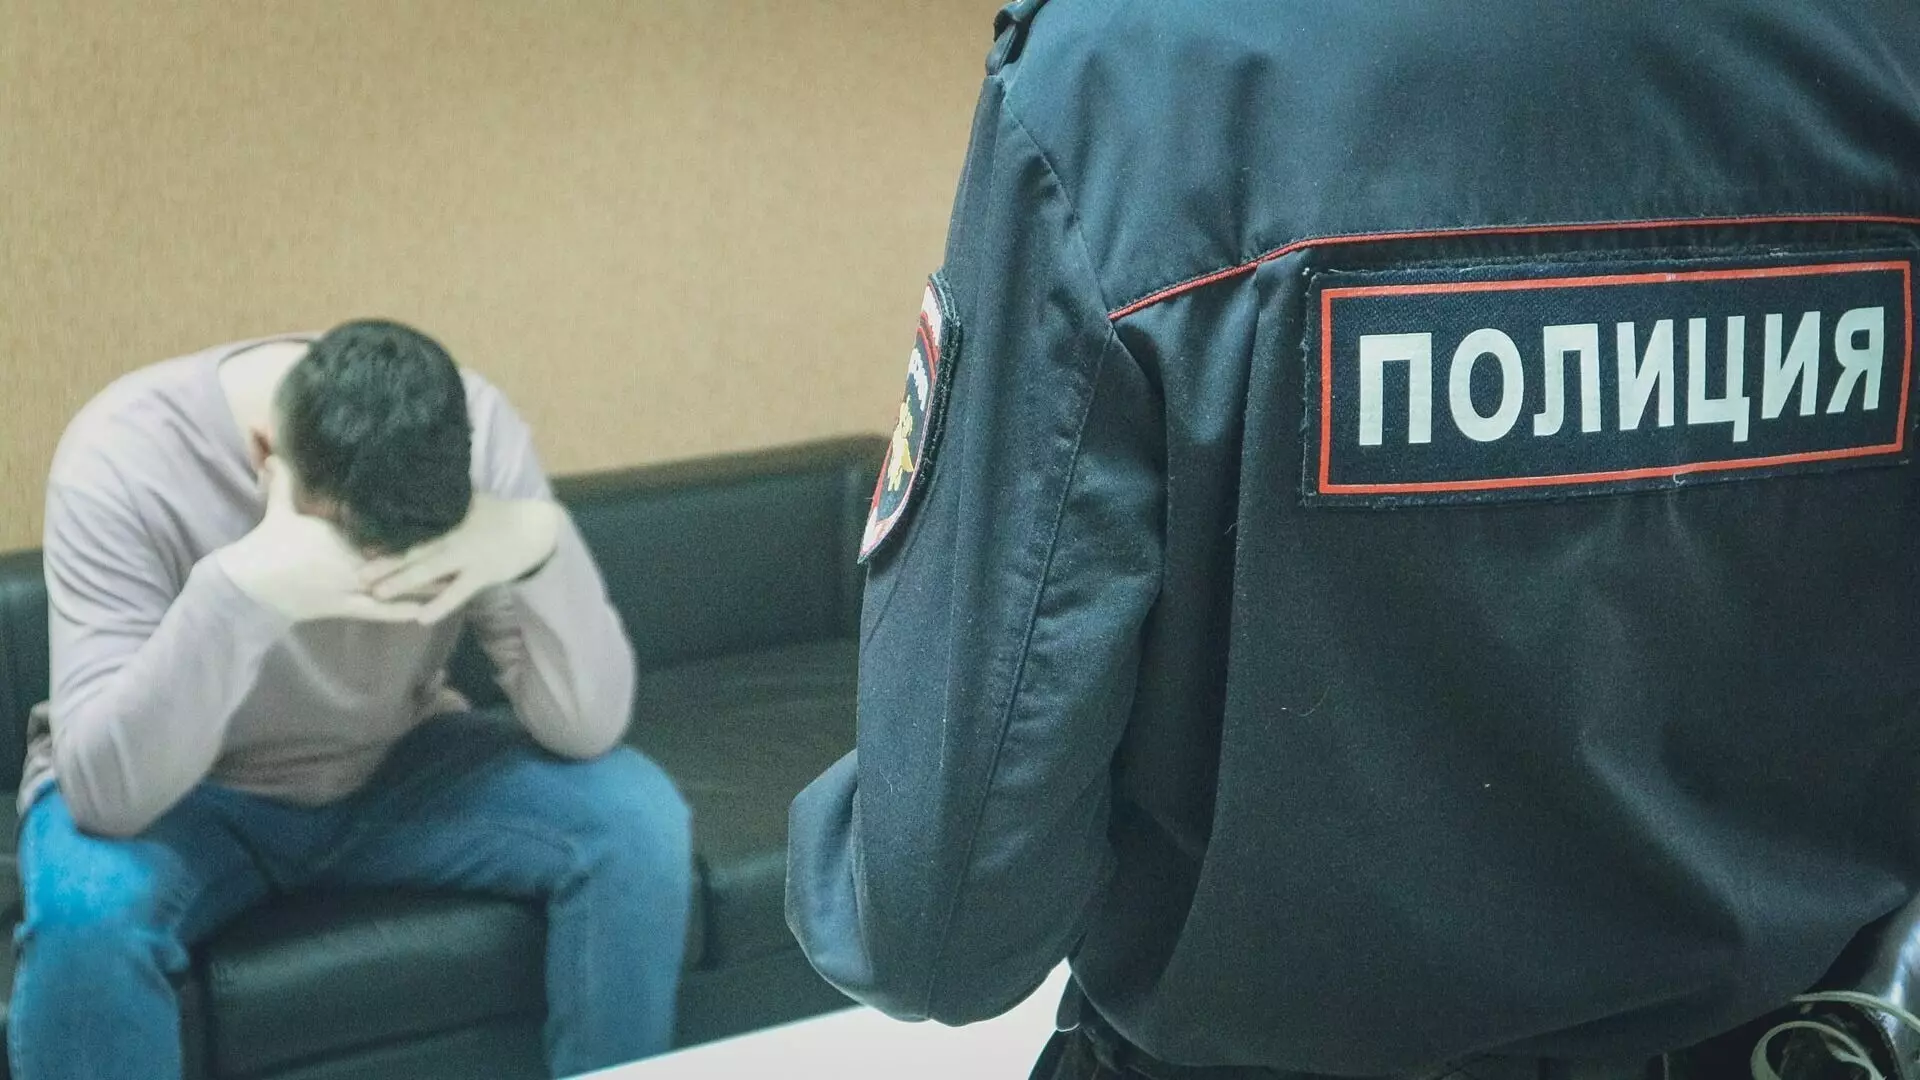 Что известно о подростках, нападавших с молотком на людей в Волгограде